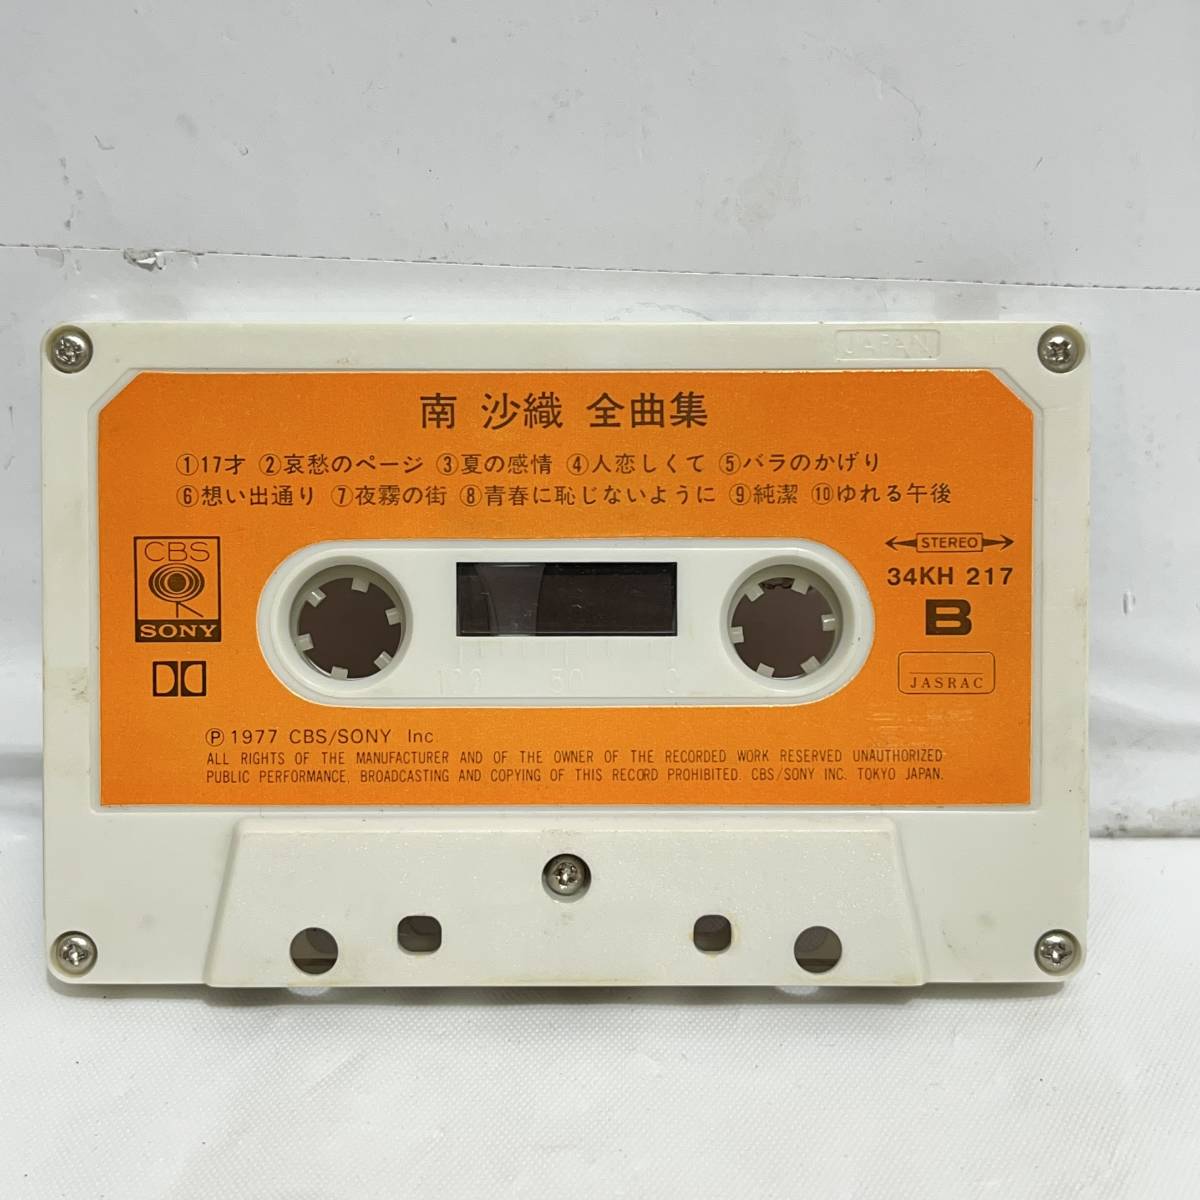 (志木)南 沙織 全曲集 カセットテープ 歌詞カード ステレオ 34KH 217 レトロ 当時物 (o)の画像2